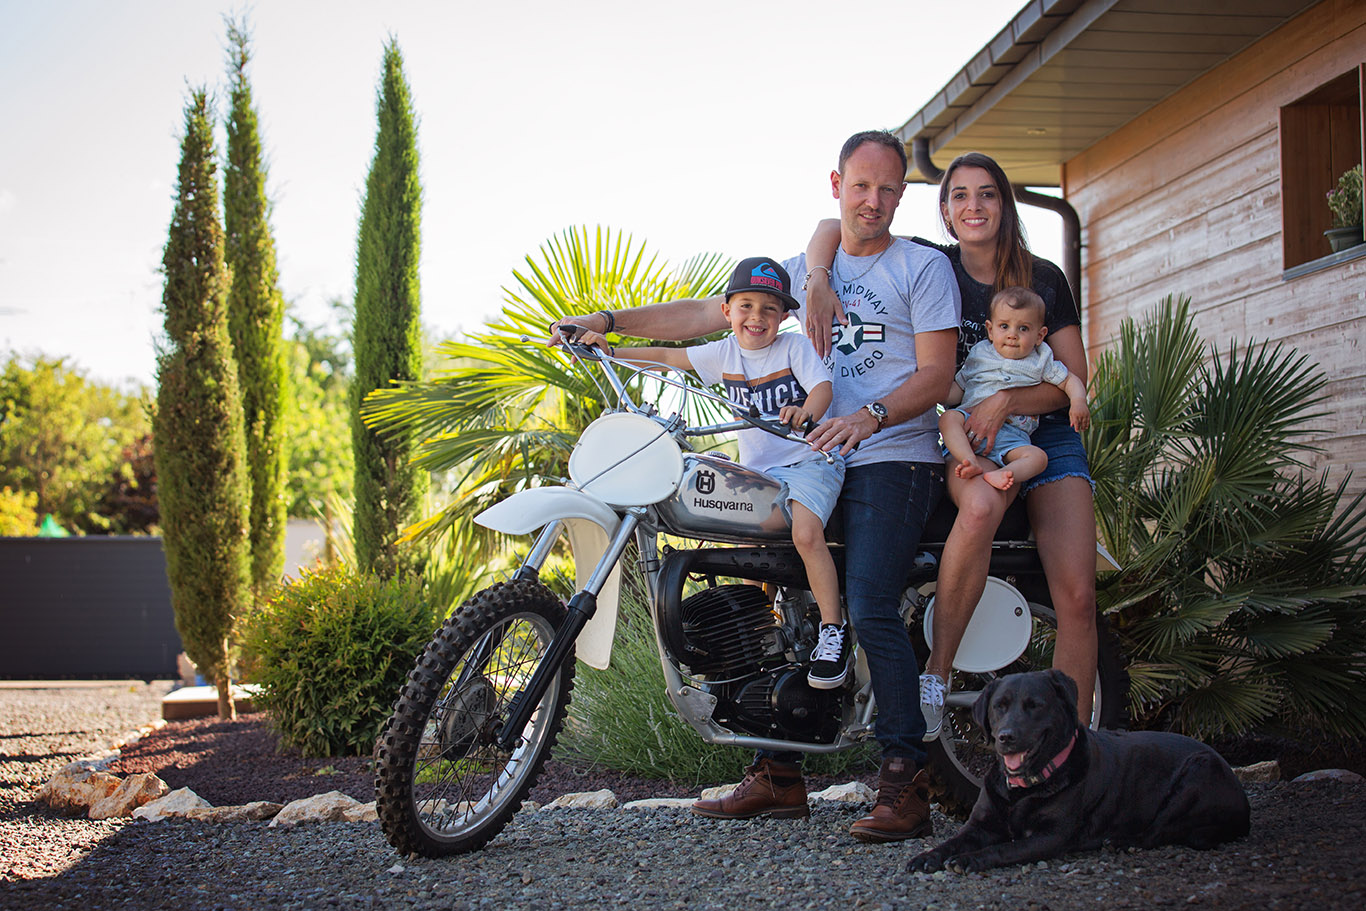 séance photo en famille à moto par Aurélie Coquan Photographe : famille de motard